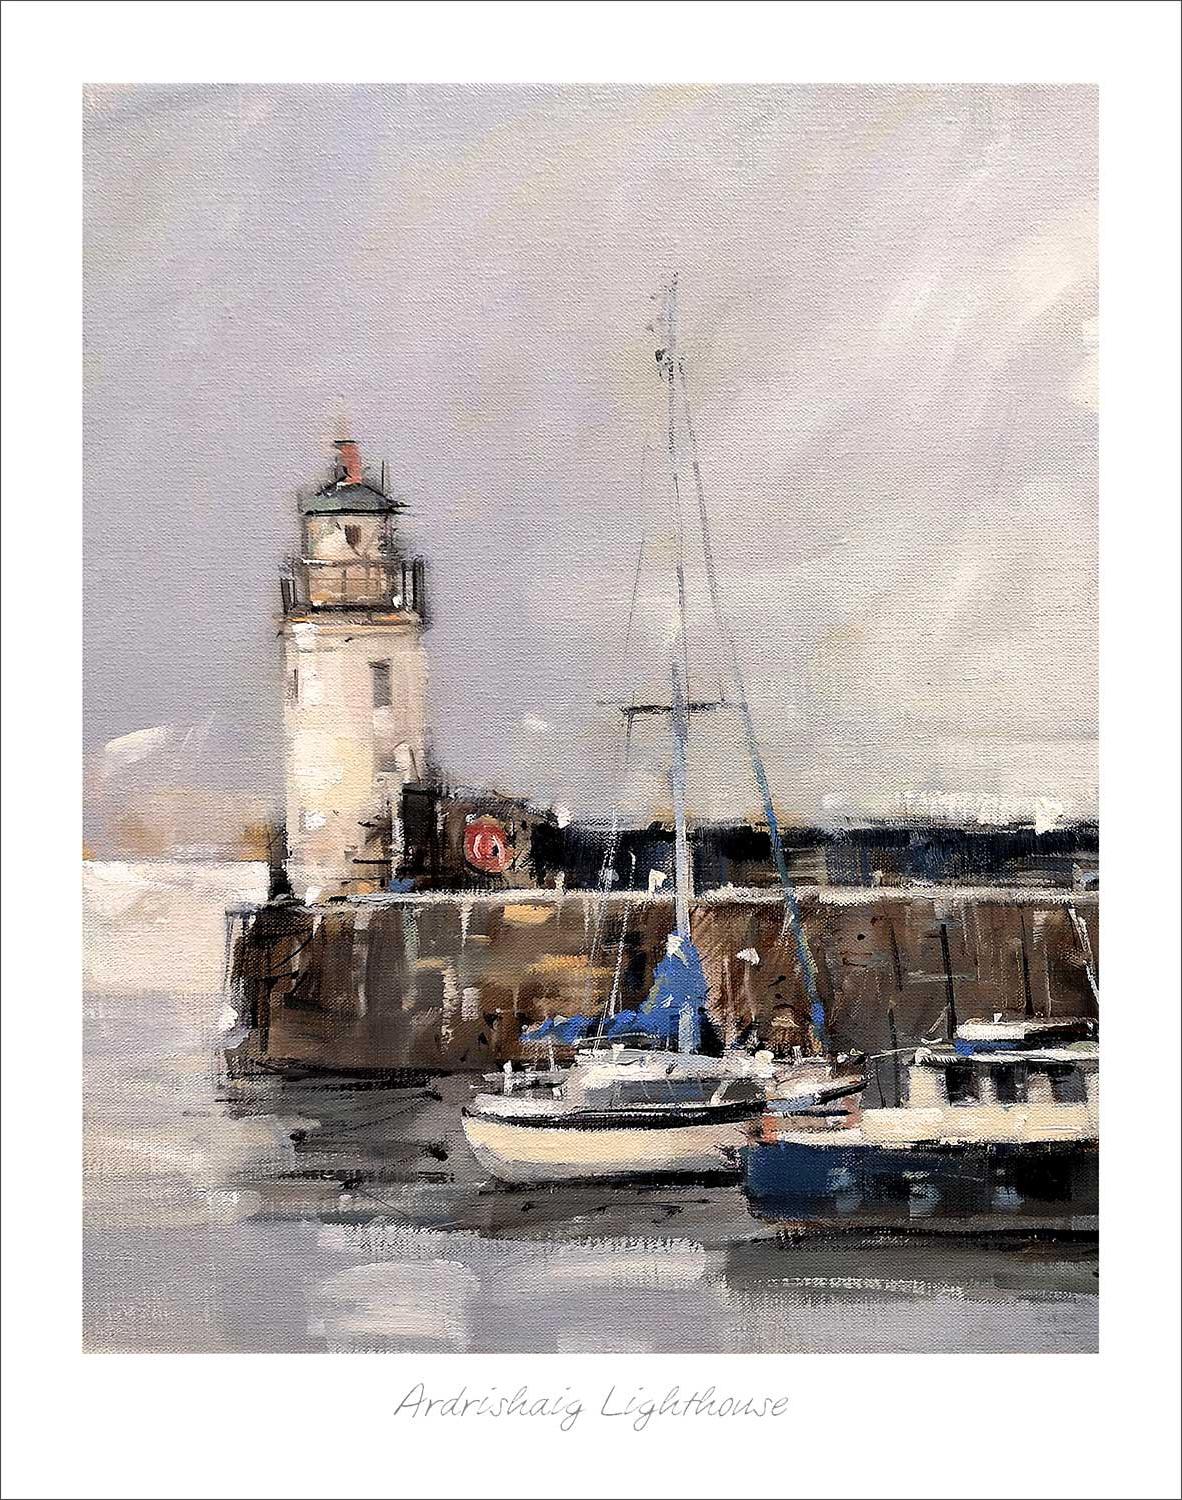 Ardrishaig Lighthouse Art Print from an original painted by artist Peter Foyle